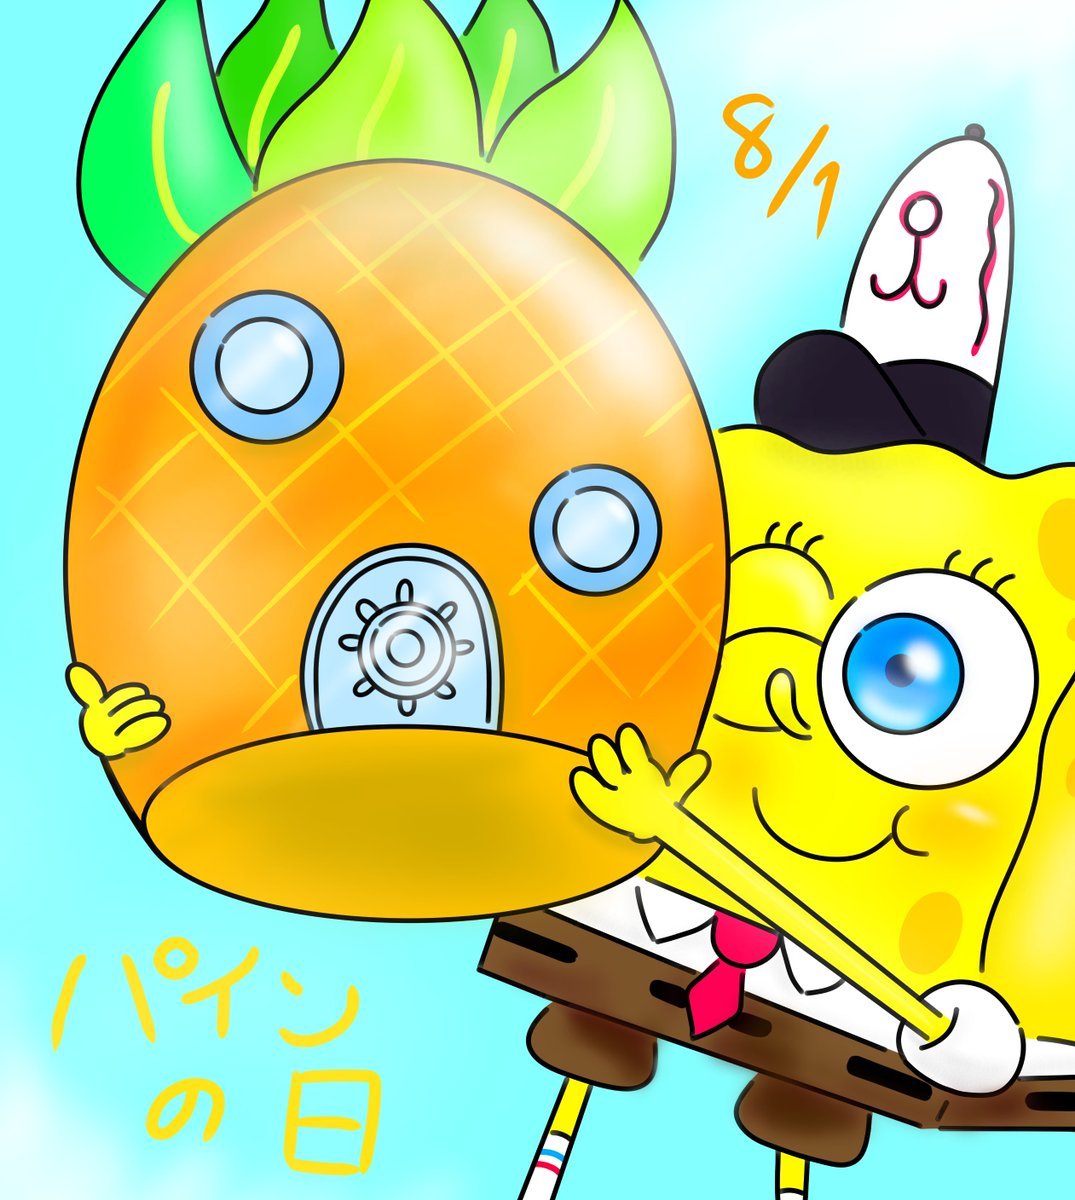 Lain 絵描きフォロバ スクエアスポンジパンツボブ スポンジボブ スポンジボブ大好き 絵描きさんと繋がりたい パンツの日 Spongebob パトリック サンディ カーニさん プランクトン イカルド T Co 6yrntg8bso T Co Pkfxn9wfqy